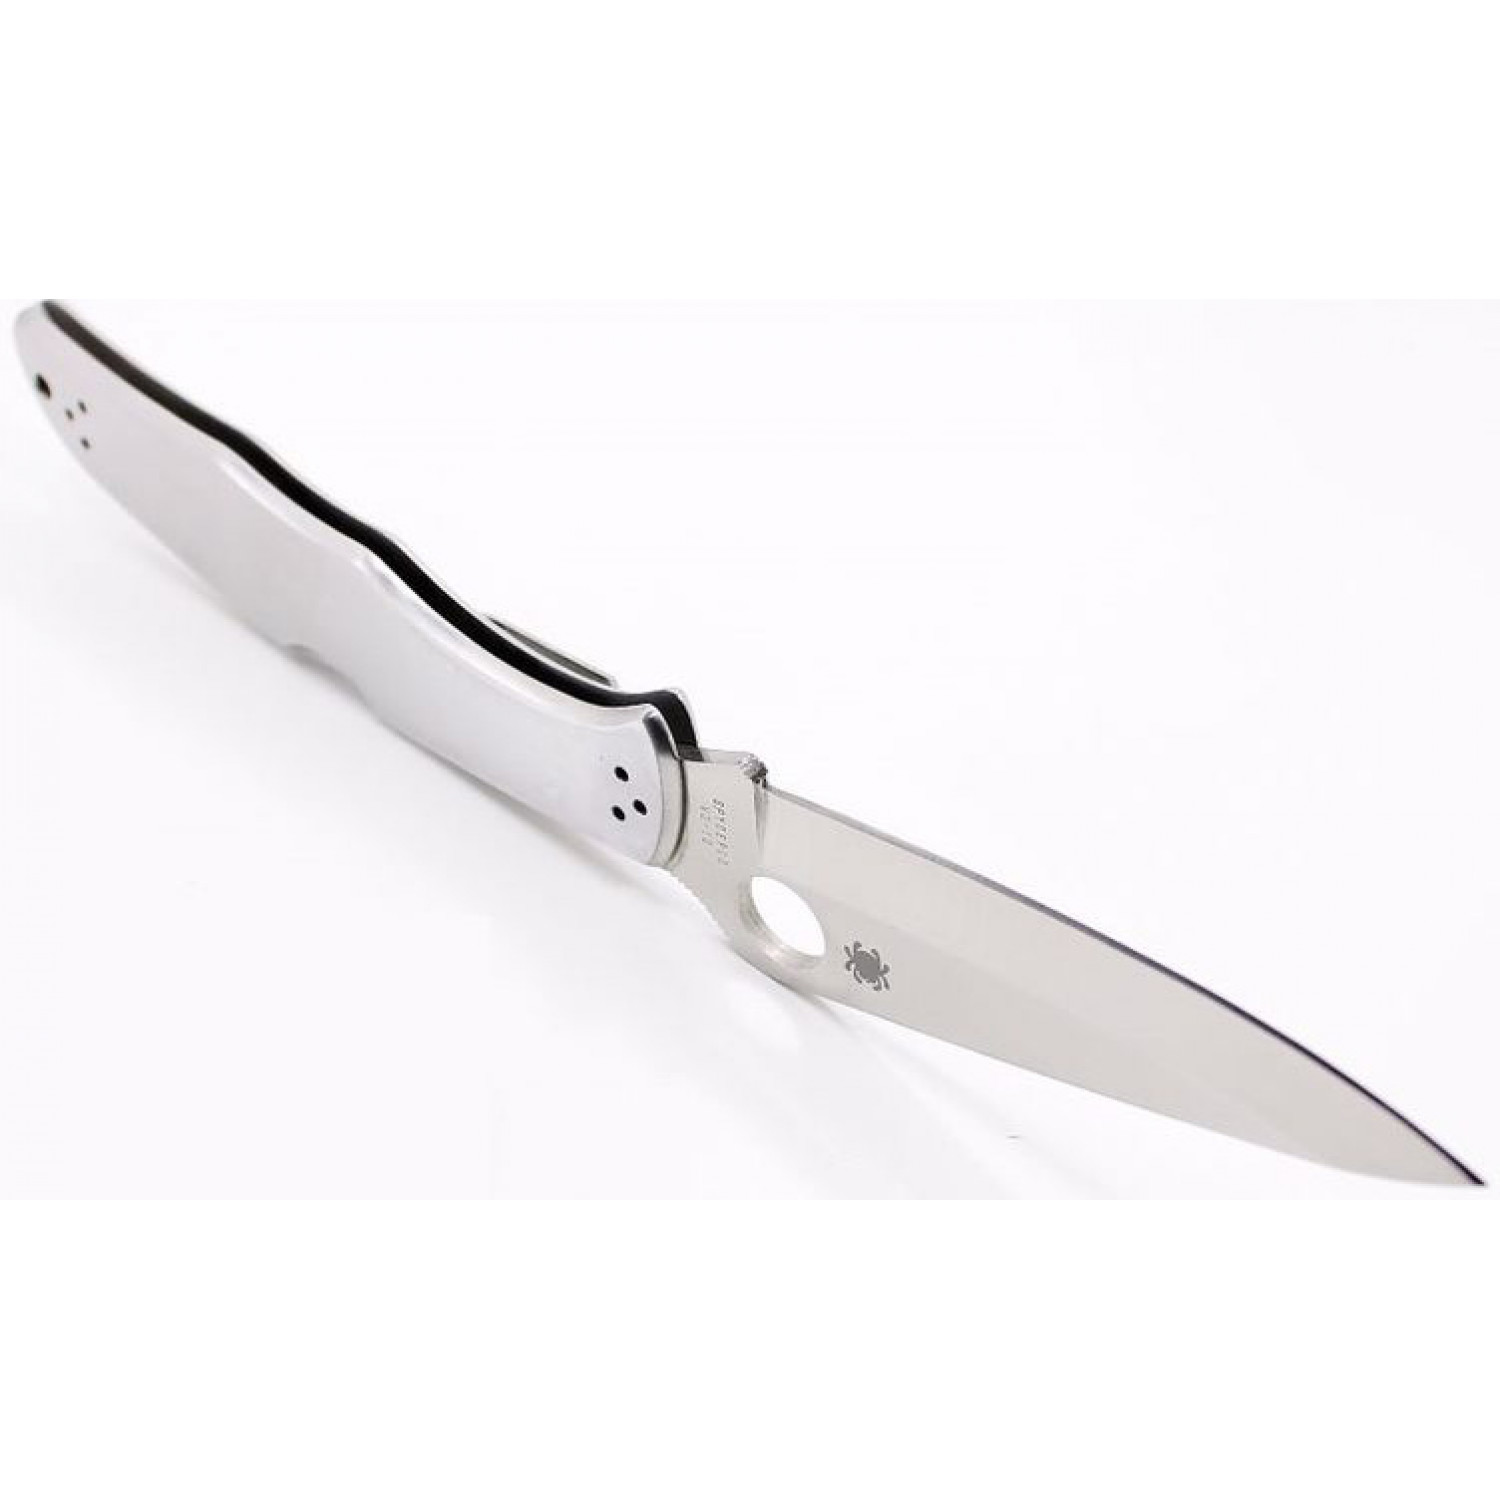 Складной нож Endura 4 - Spyderco 10P, сталь VG-10 Satin Plain, рукоять нержавеющая сталь - фото 6